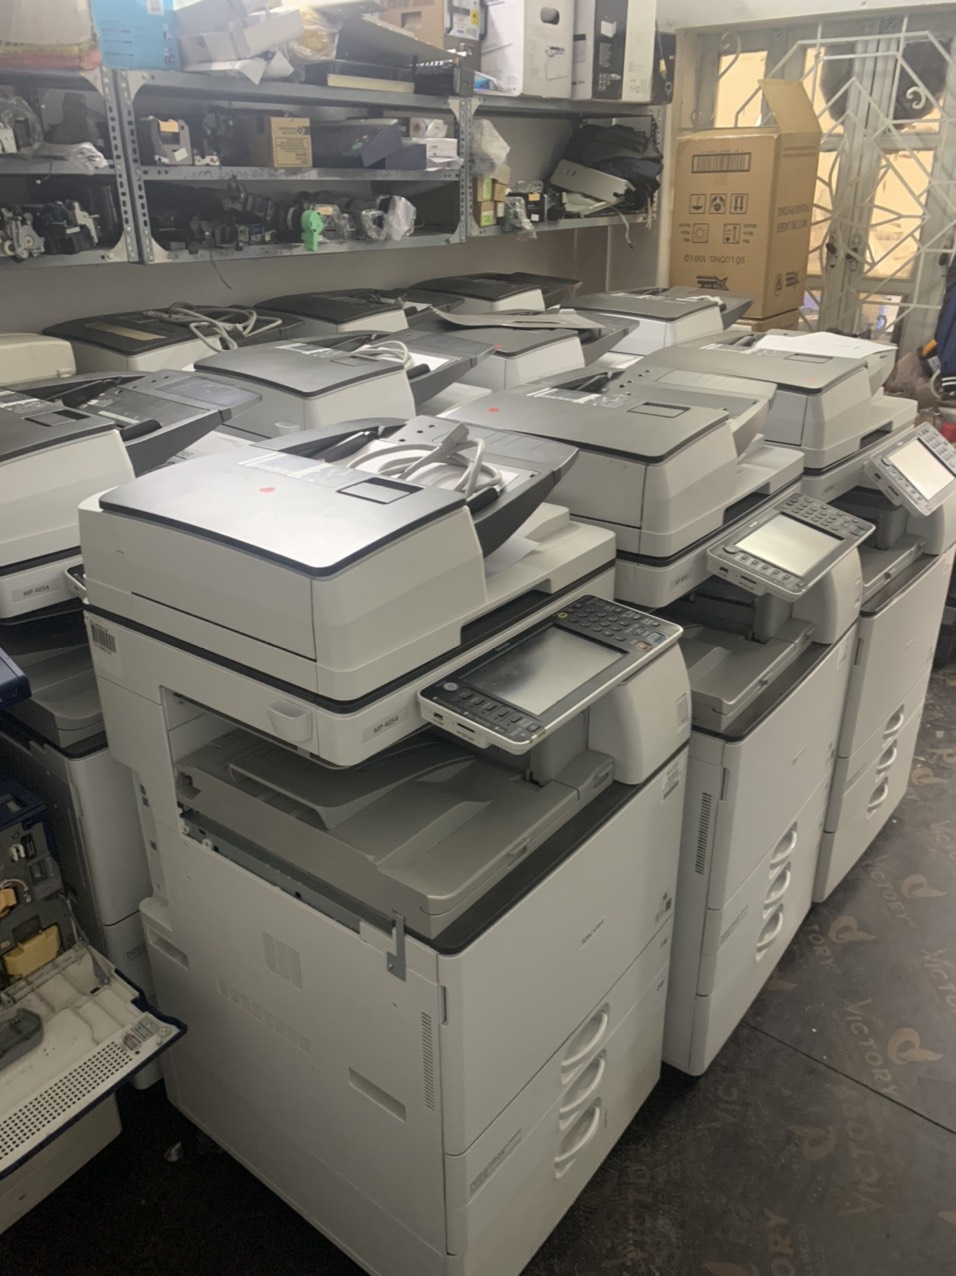 Cho thuê máy Photocopy màu tại khu công nghiệp Thạch Thất - khu công nghệ cao Láng Hòa Lạc (UY TÍN, CHẤT LƯỢNG, GIÁ RẺ)